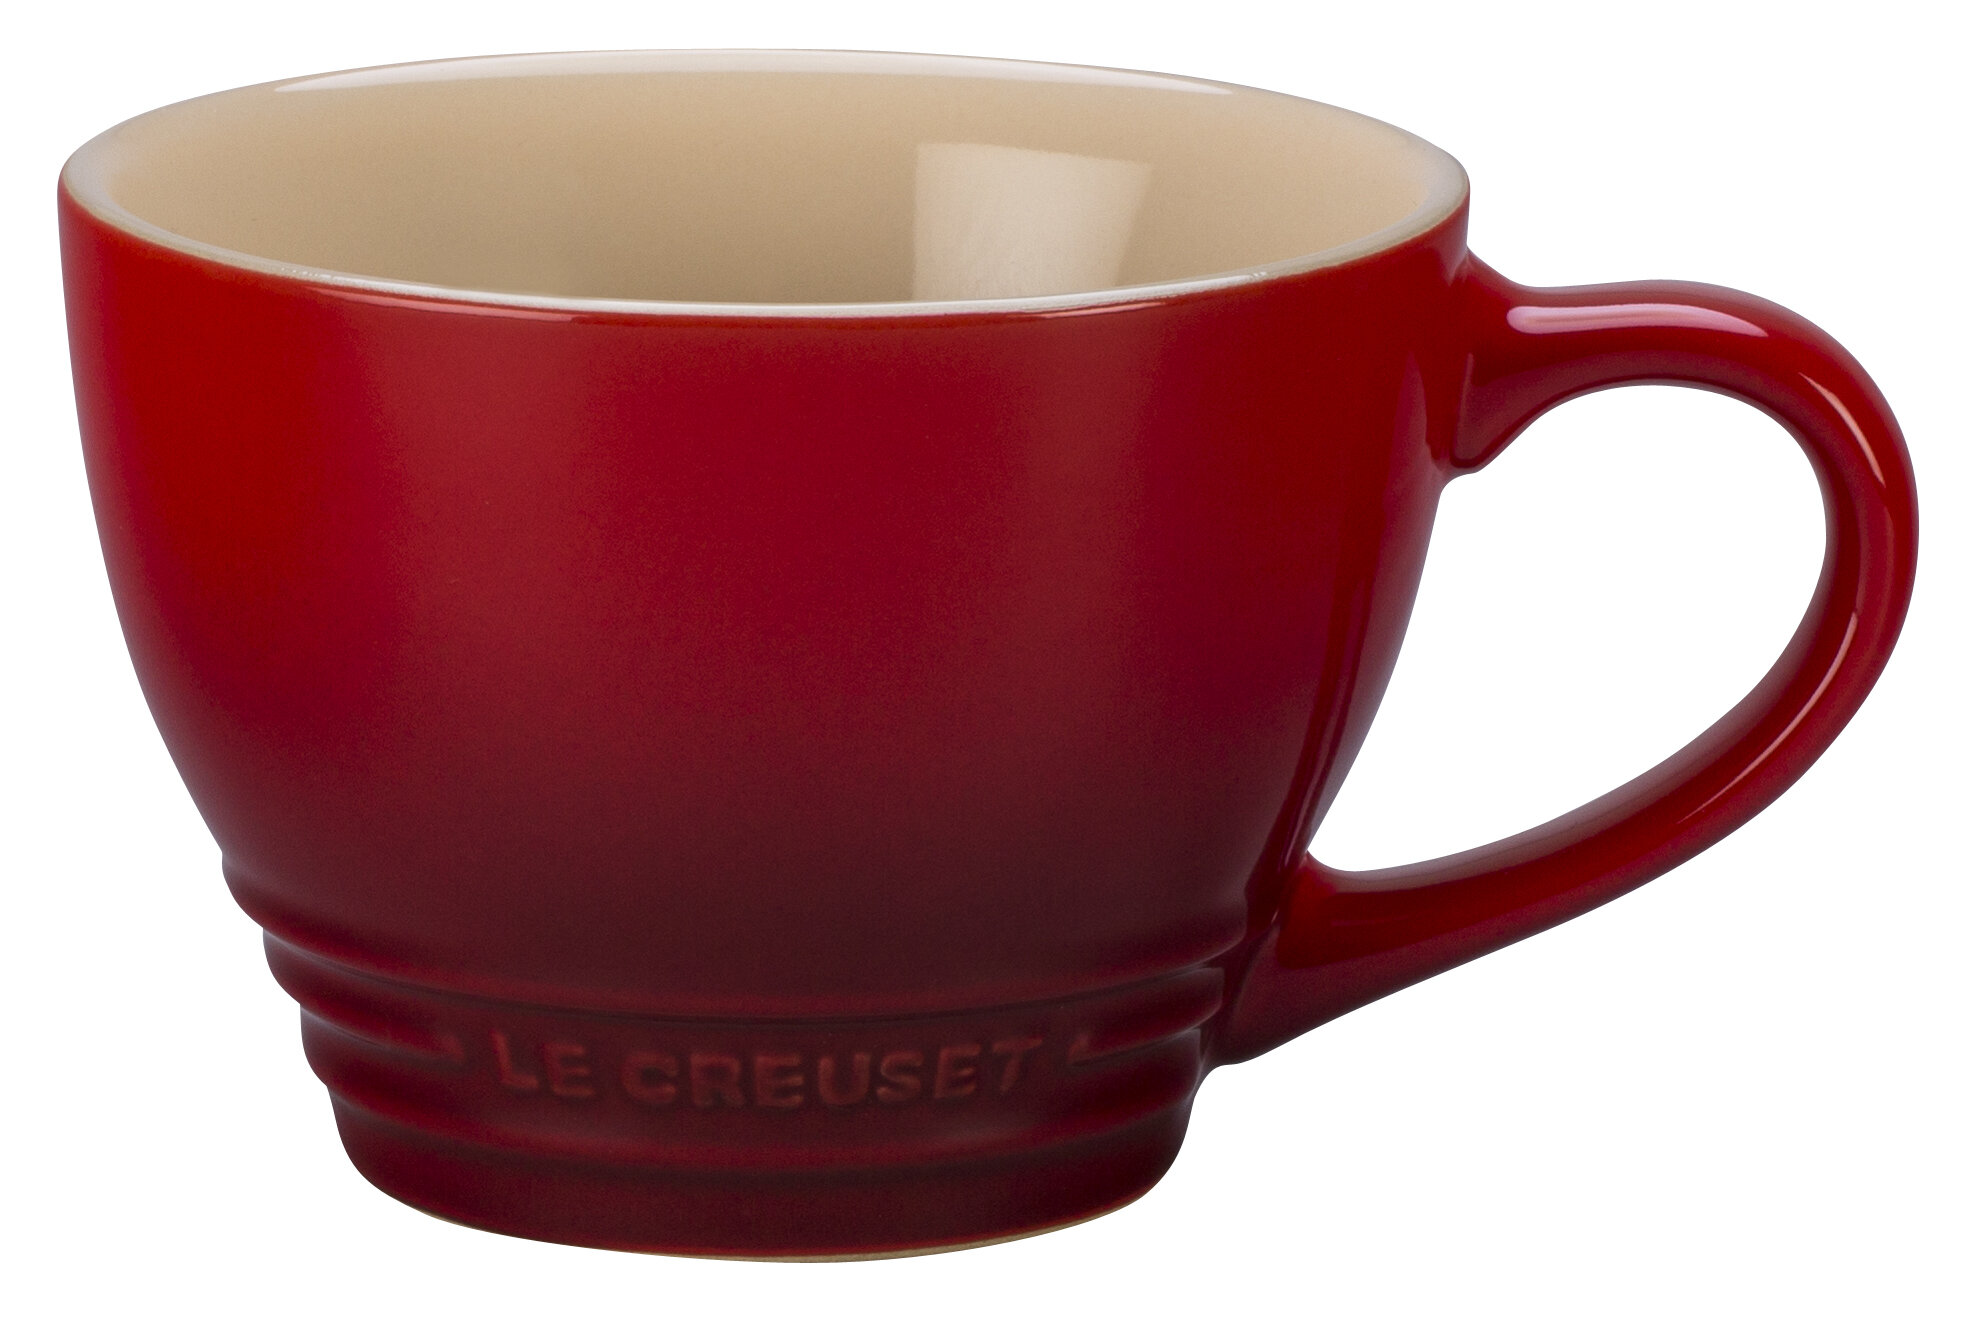 Le Creuset 22 oz Stoneware Soup Bowls Set of 4 - Cerise